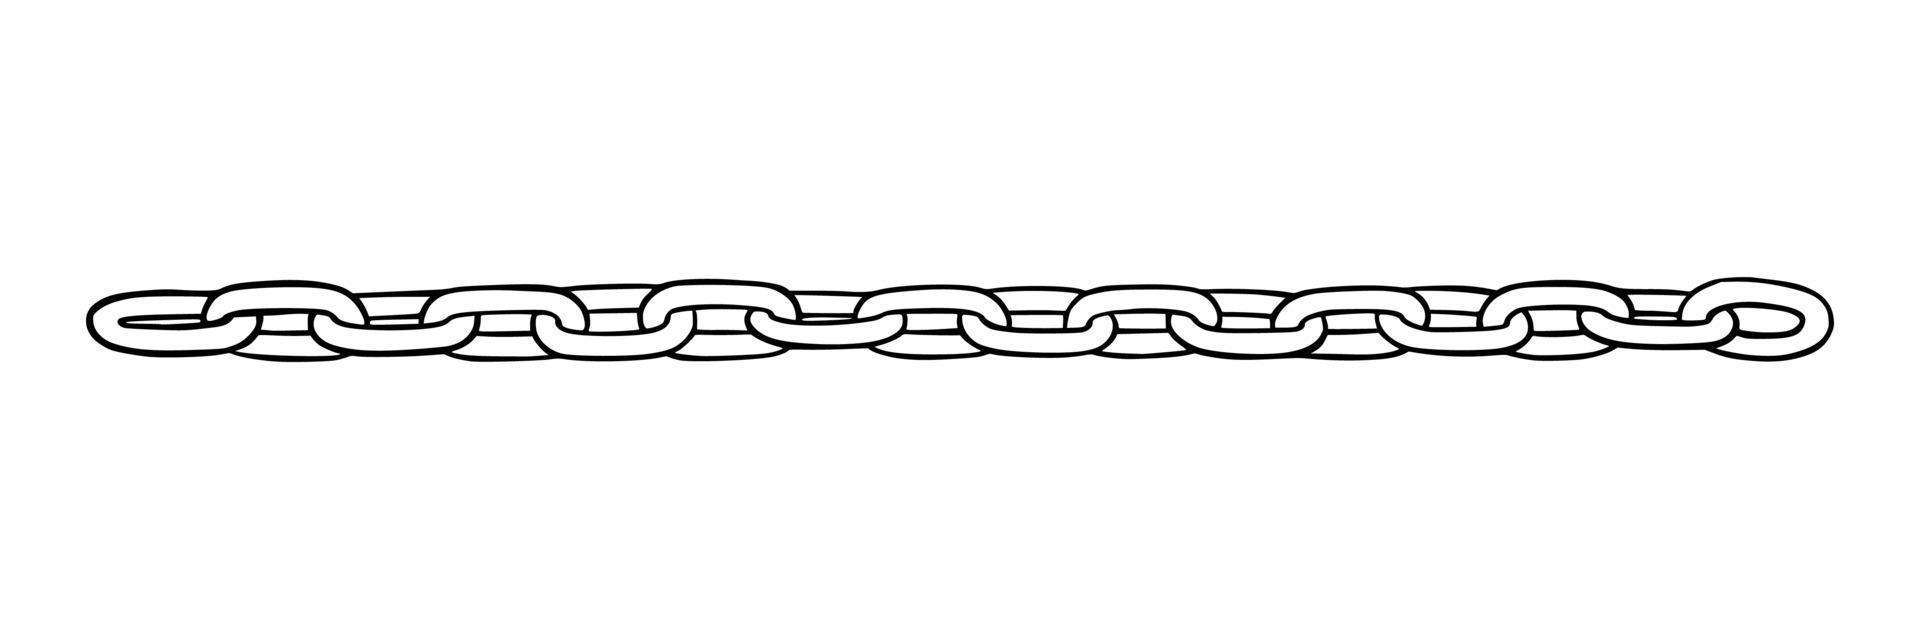 cadena como símbolo de unidad y cooperación. boceto de cadenas de metal. ilustración vectorial vector